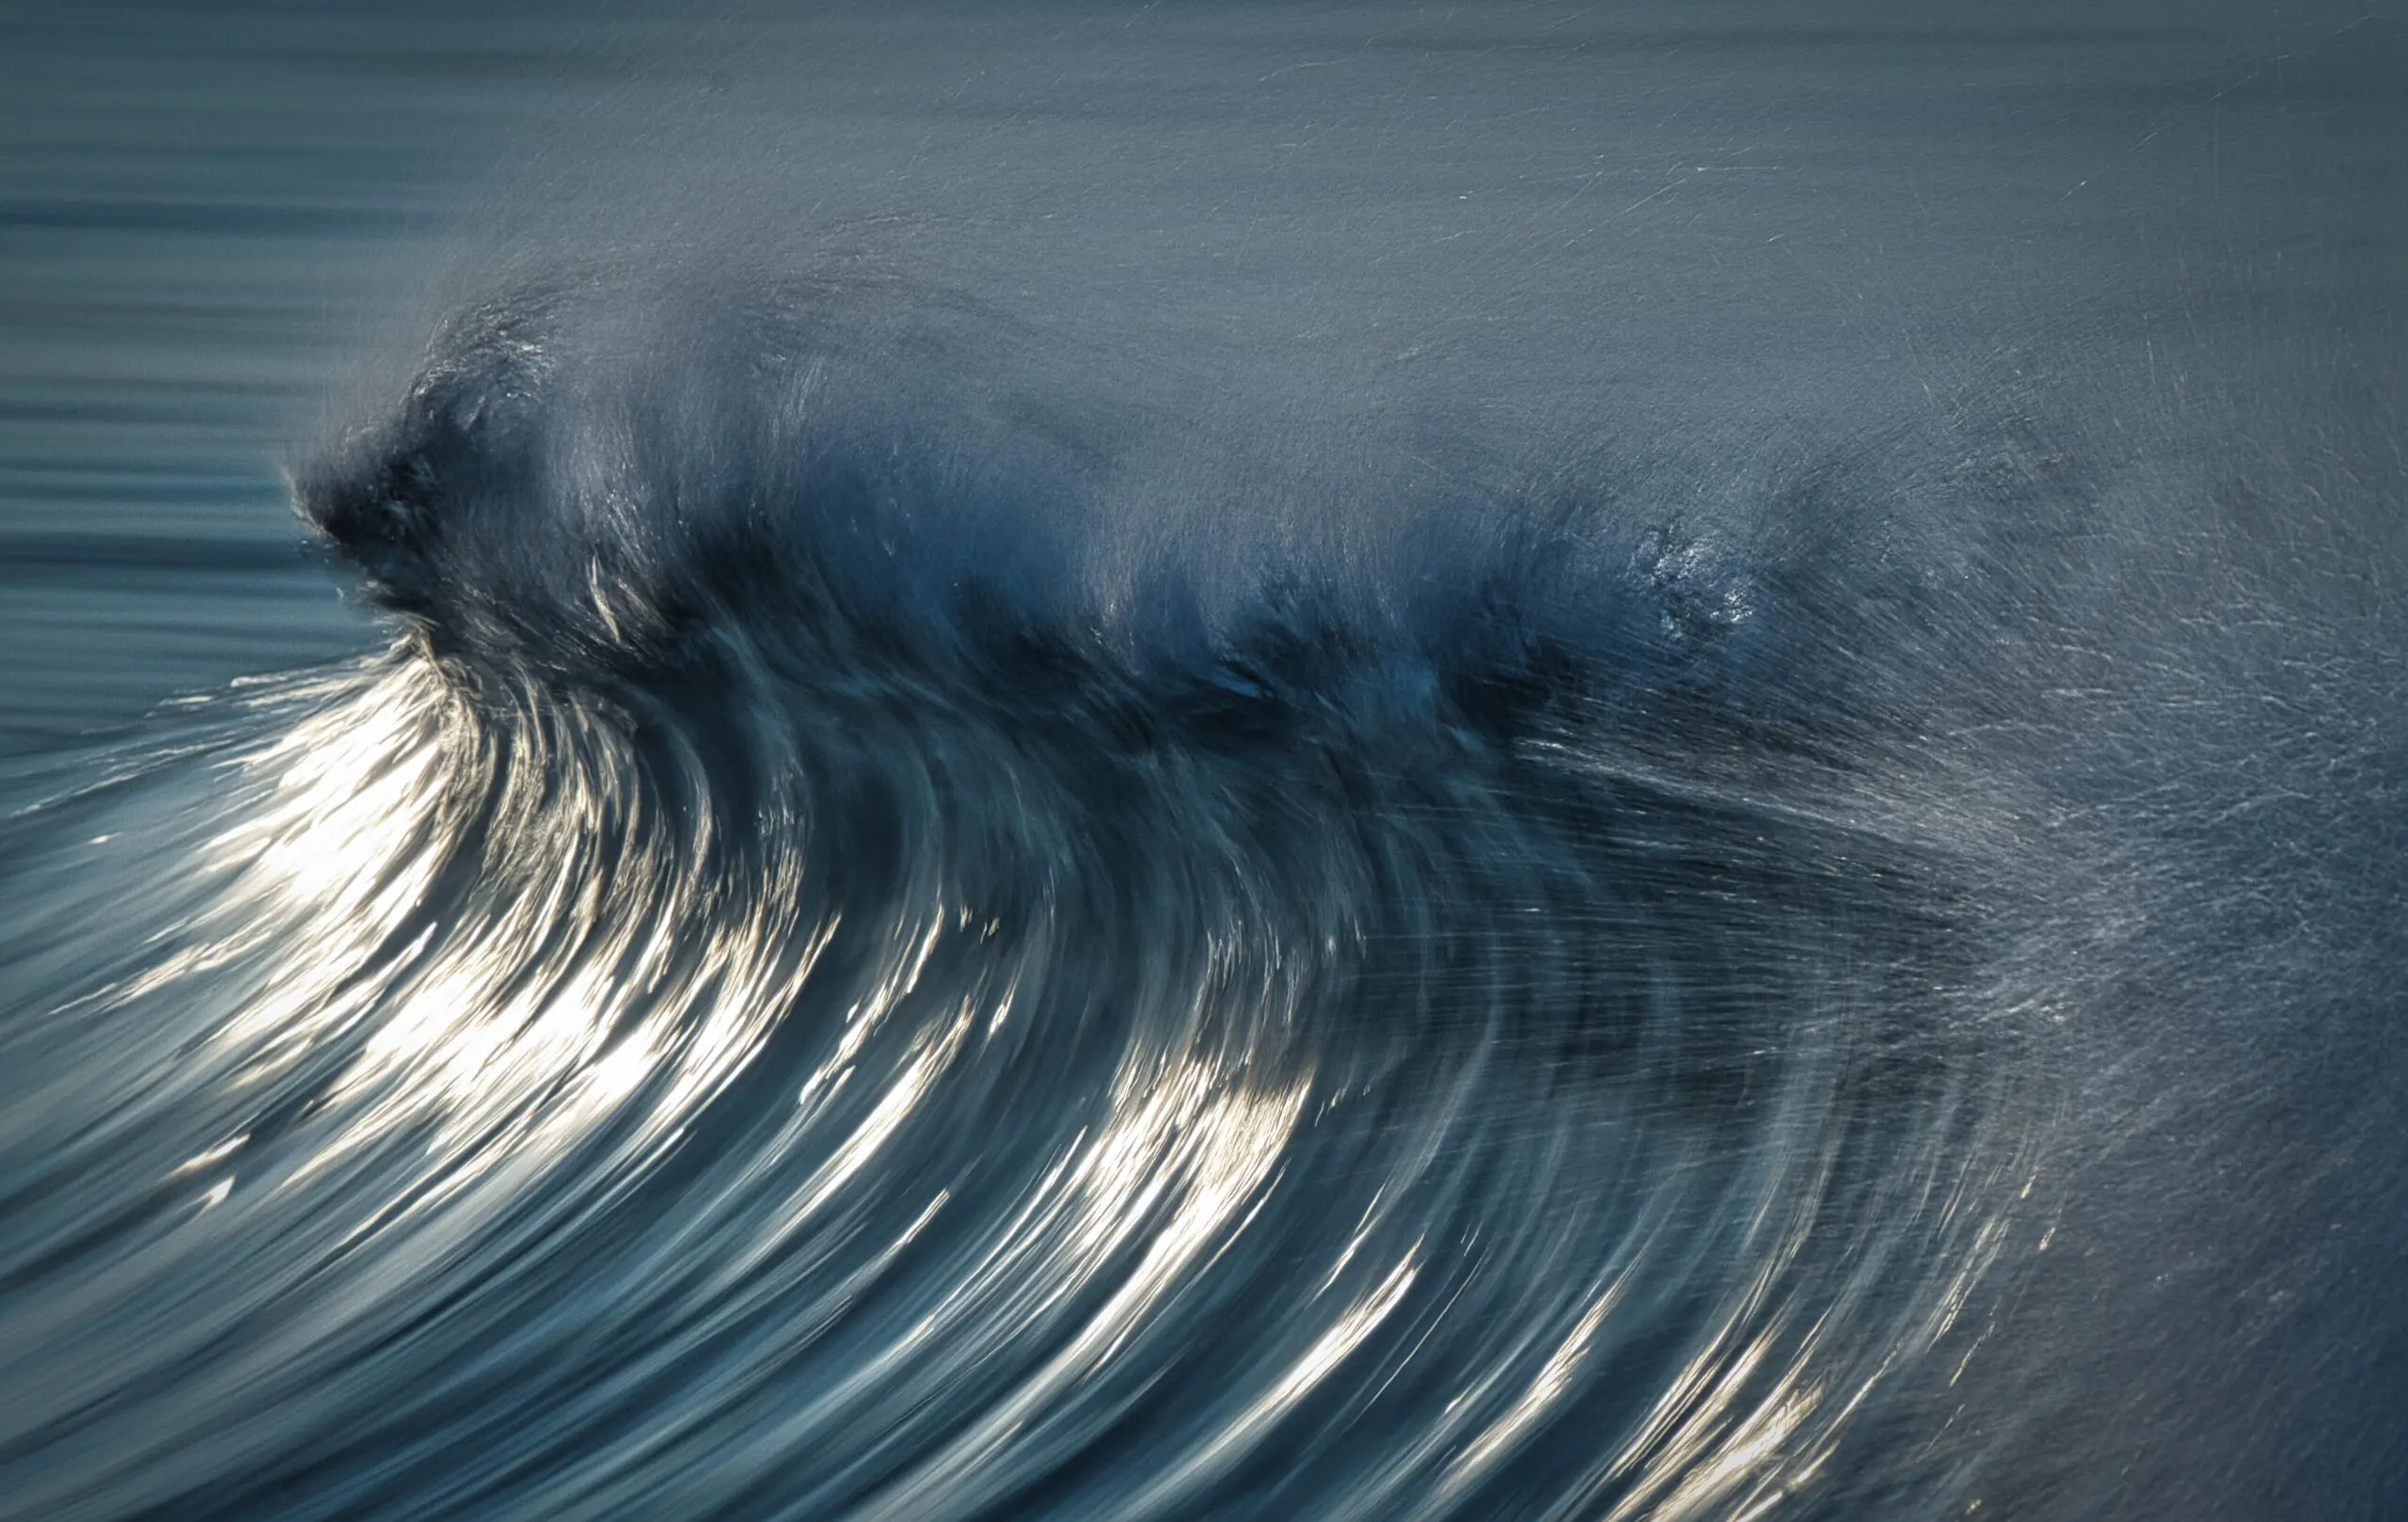 Wandbild (26118) Wind Wave by Takafumi Yamashita präsentiert: Wasser